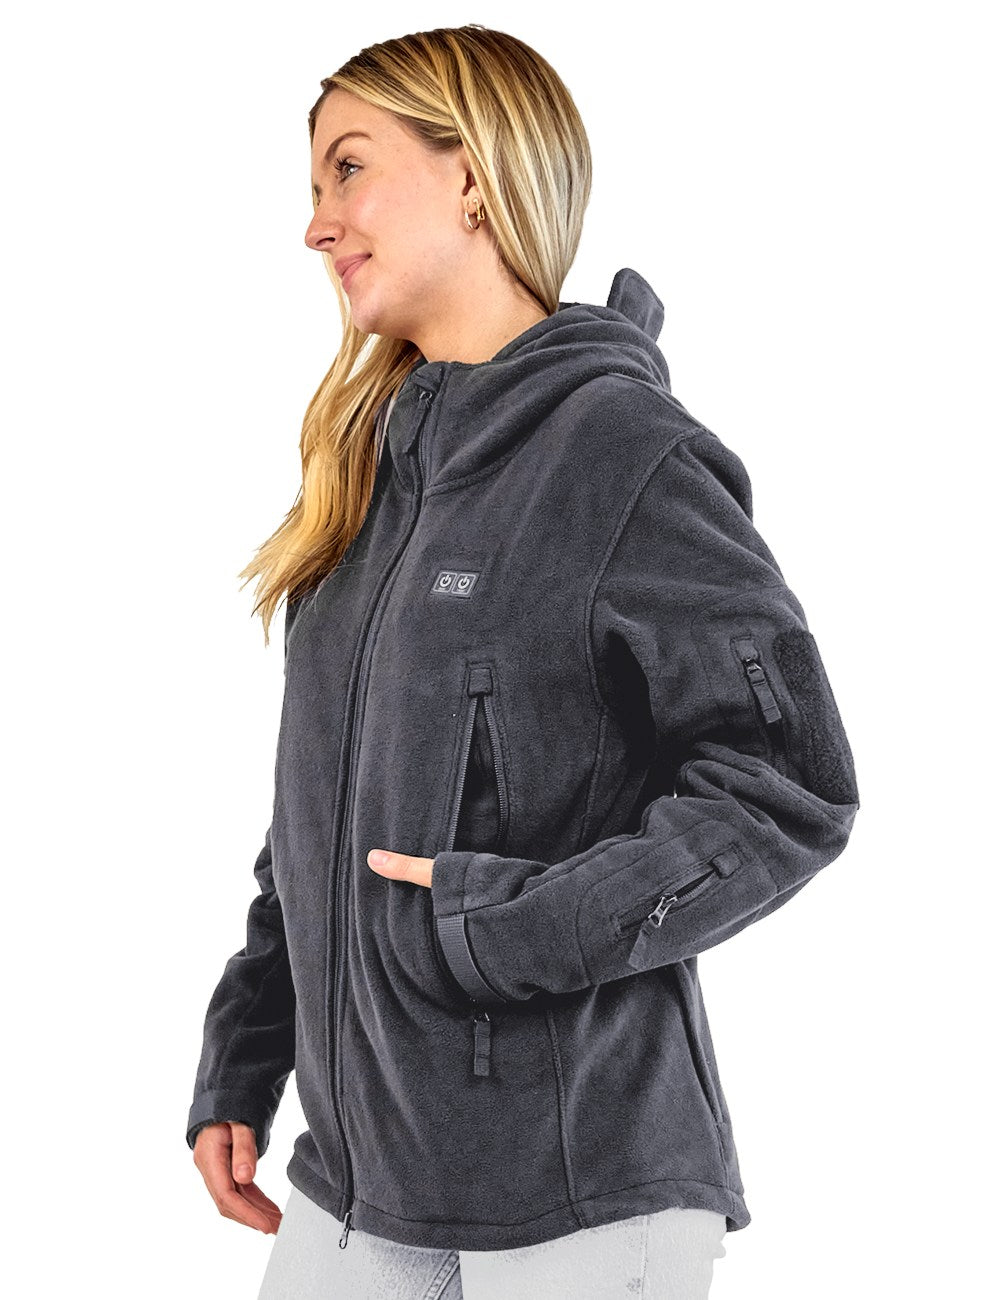 ANTARCTICA GEAR Heated Jacket, Polar Fleece Coat for Women